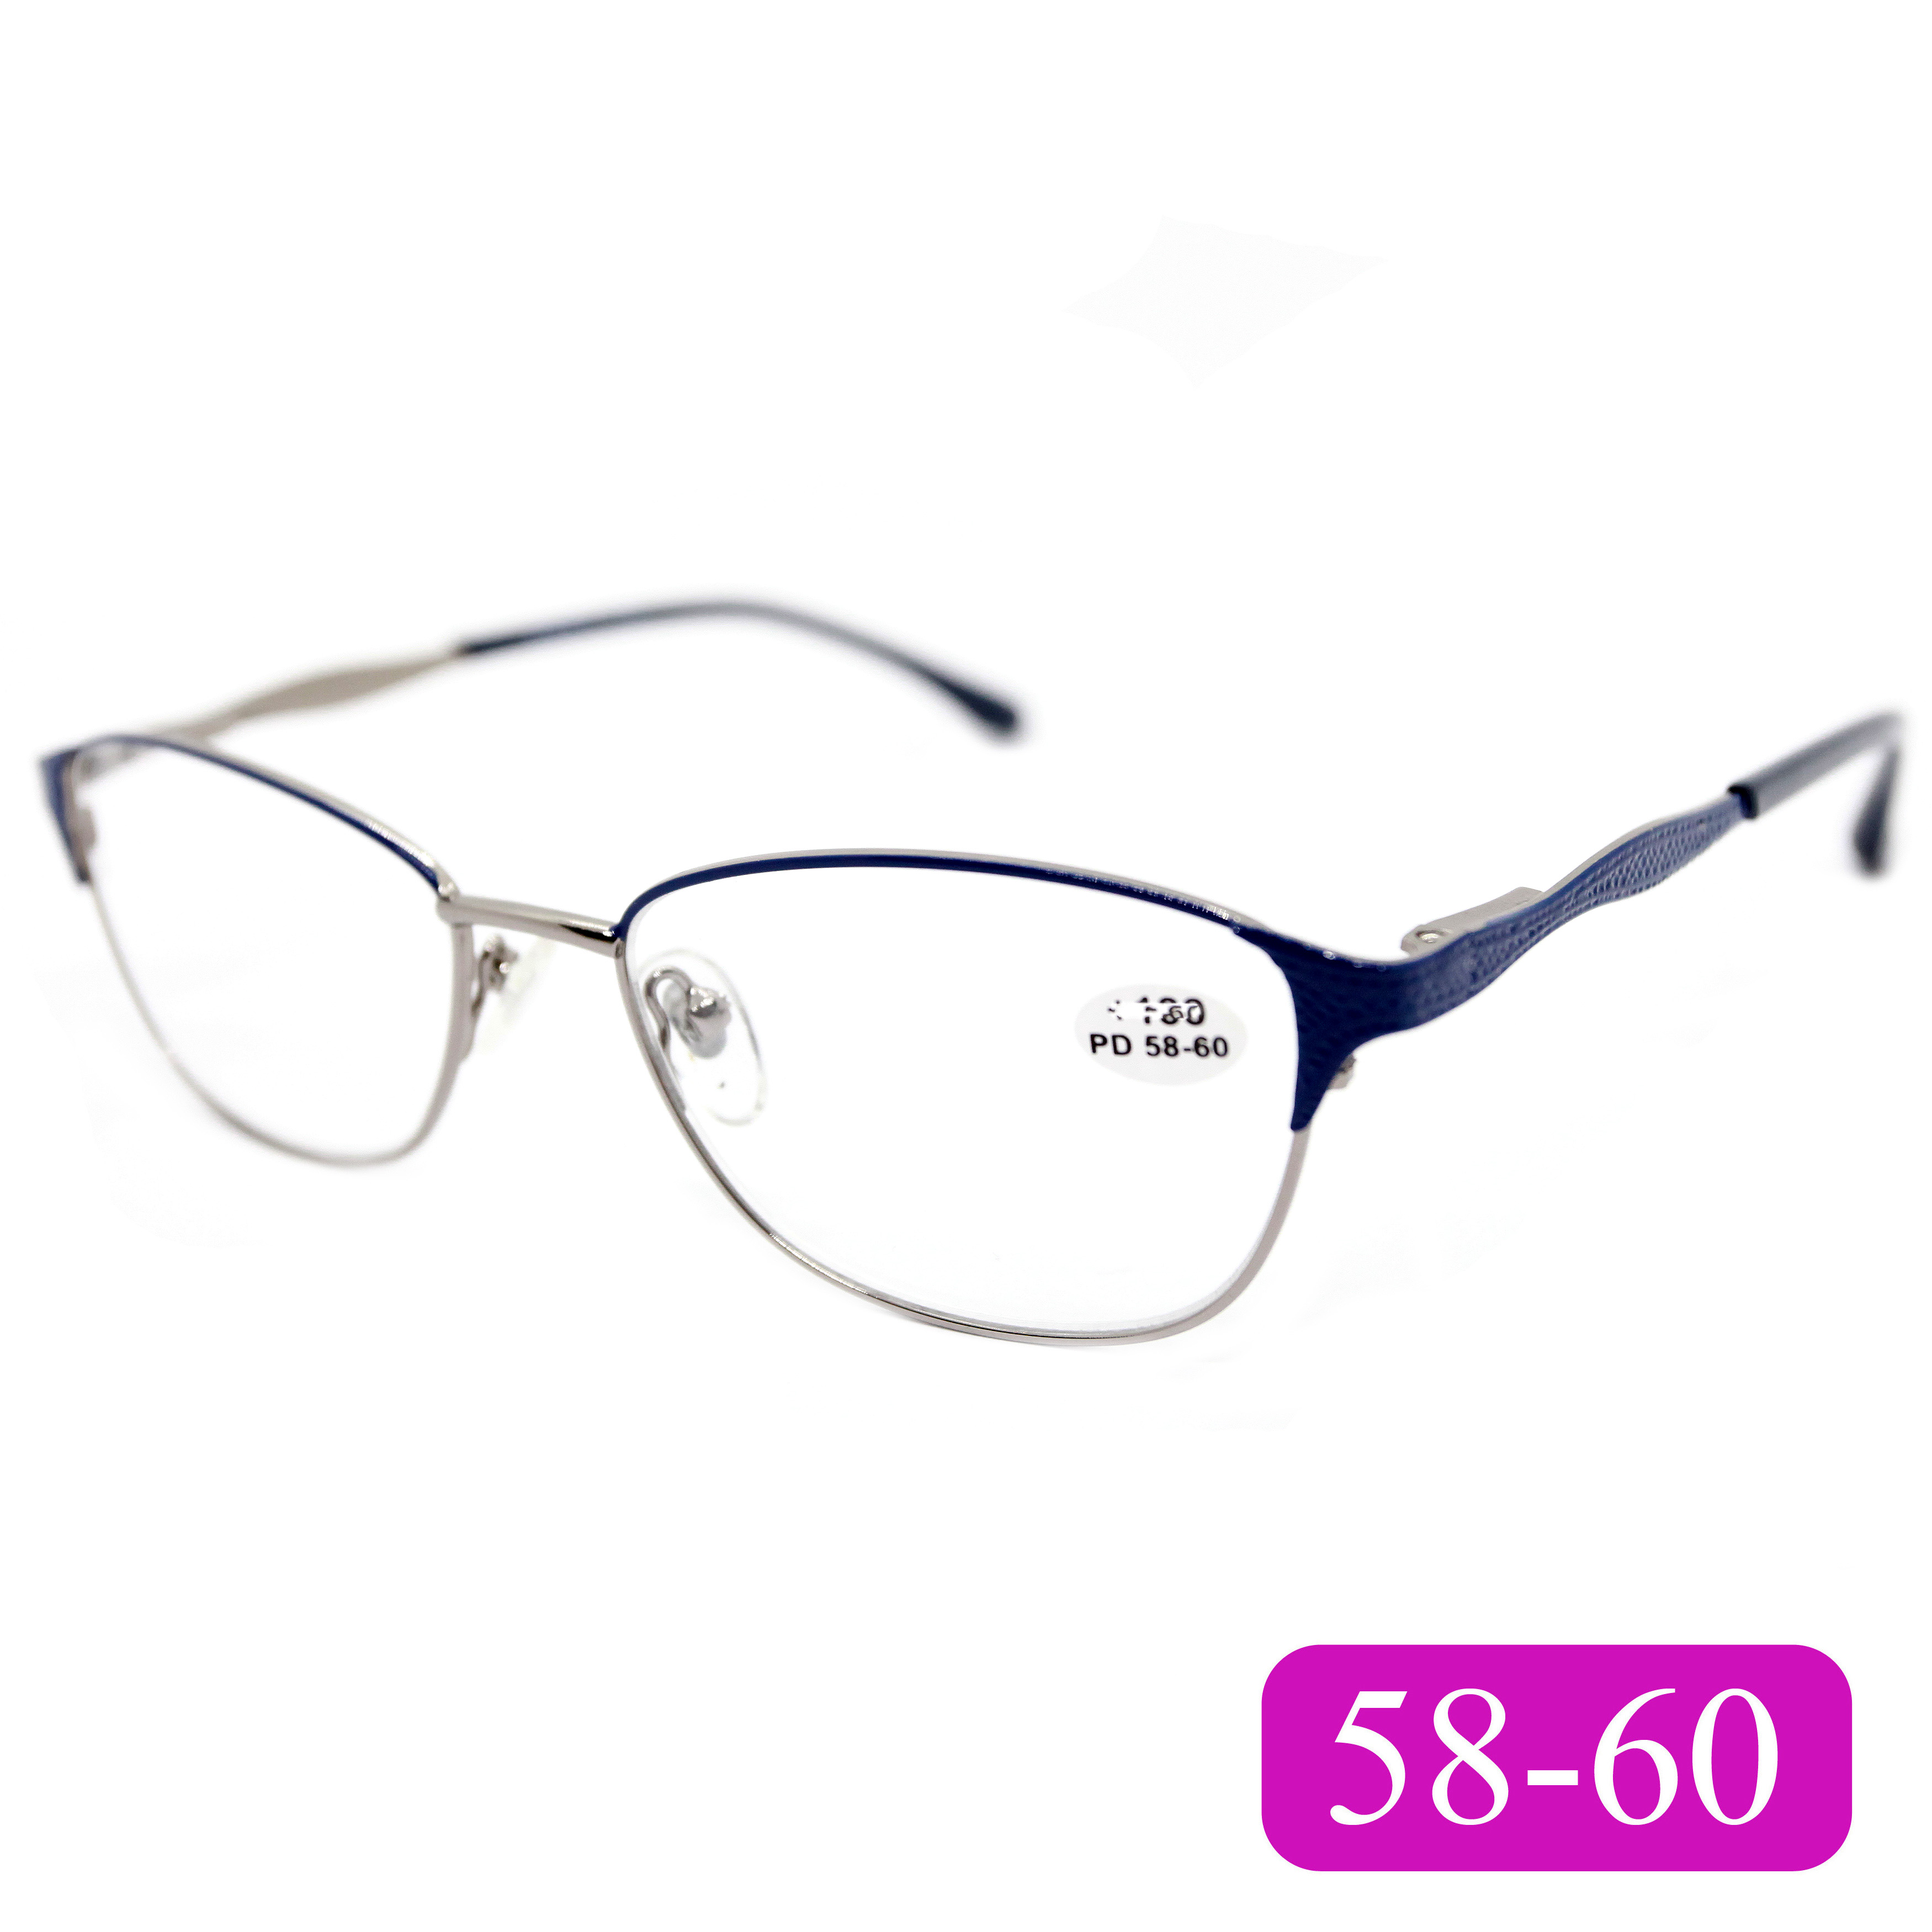 Корригирующие очки для чтения RALH 0715 +2,75, без футляра, цвет синий, РЦ 58-60